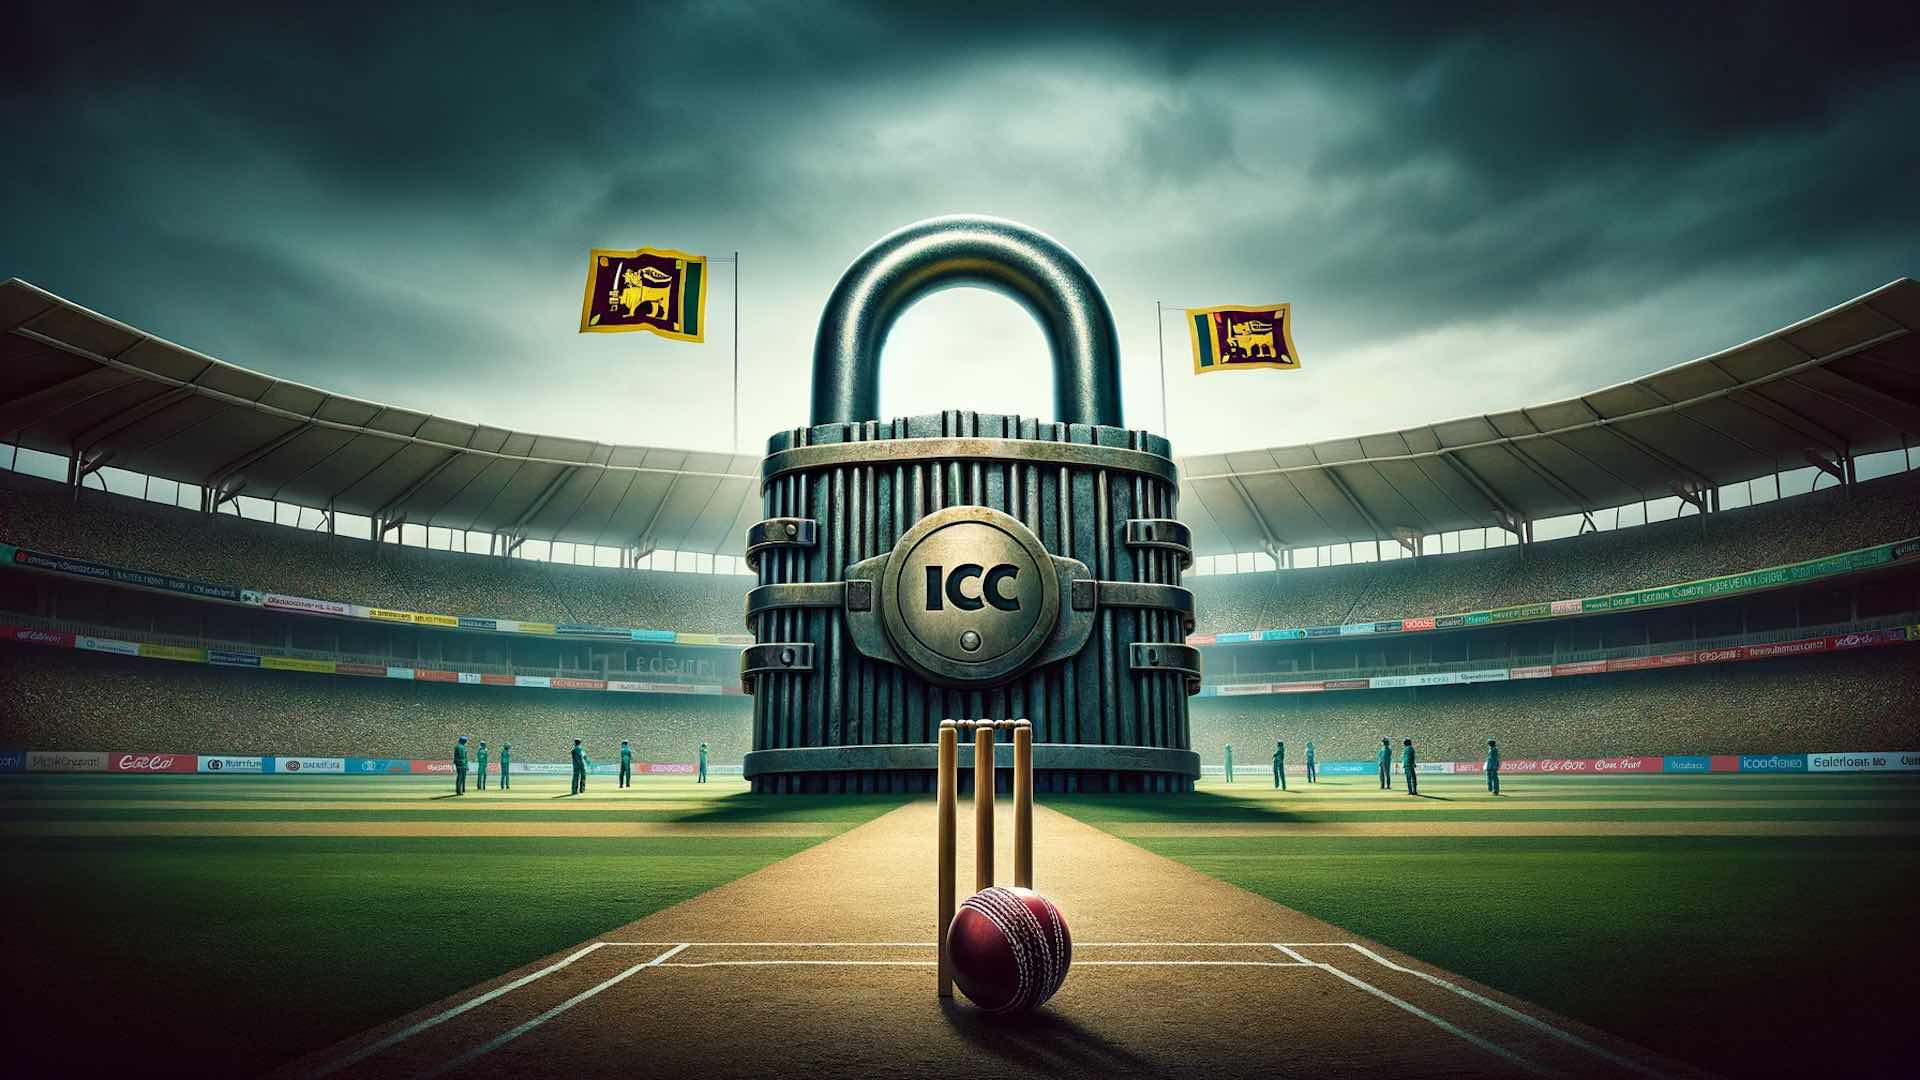 政府干预导致国际刑事法院暂停斯里兰卡板球比赛